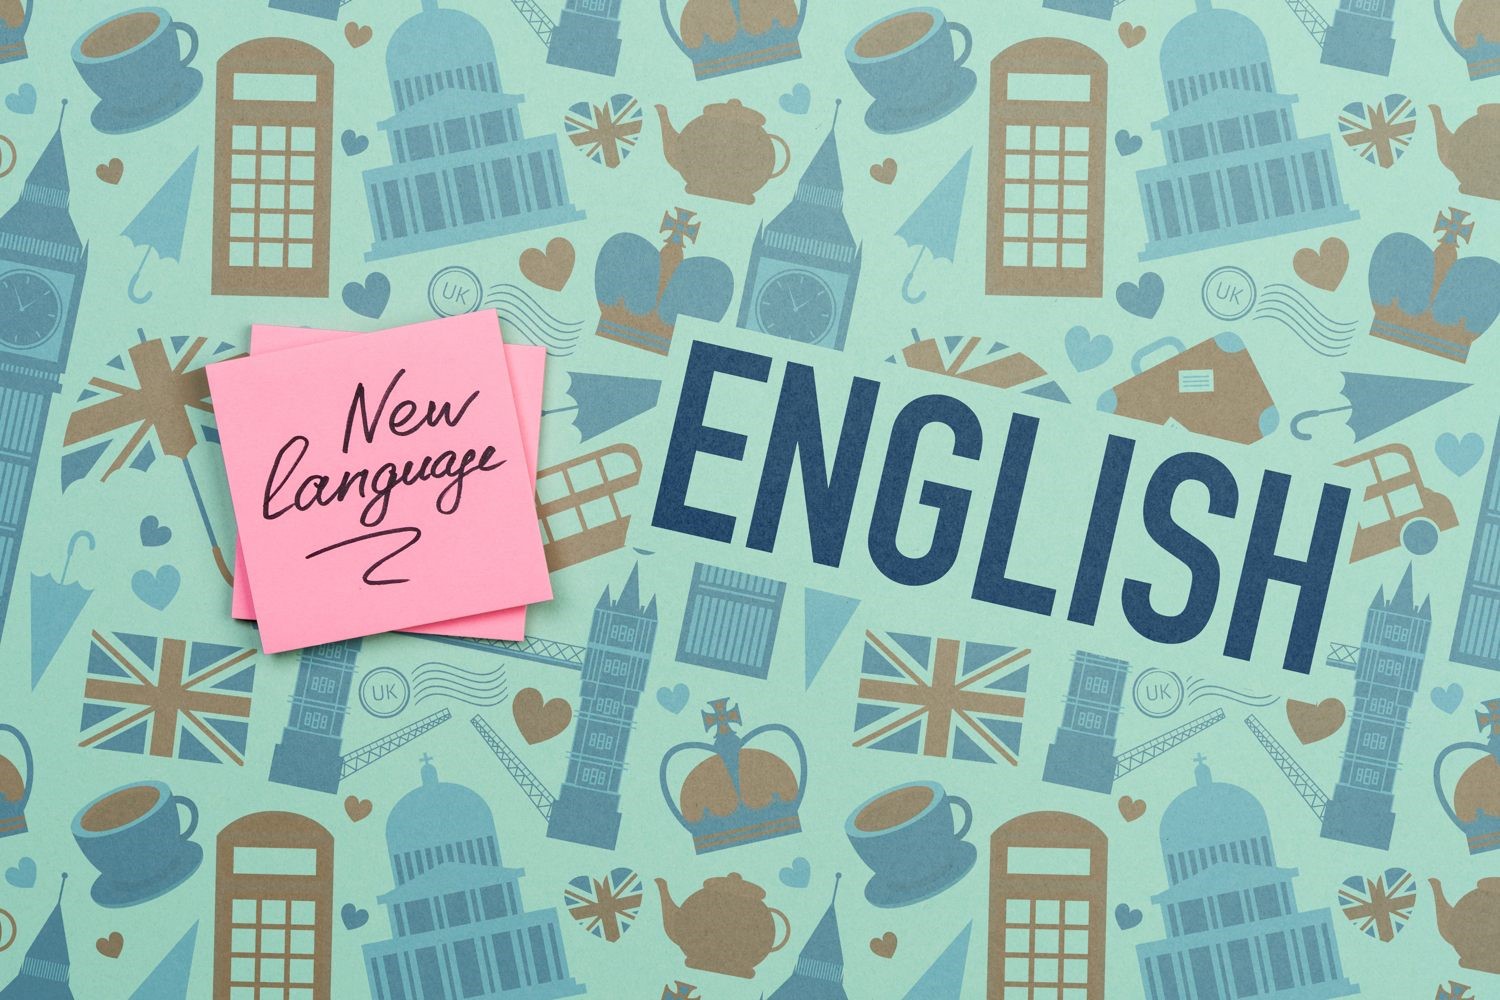 چند نفر در جهان زبان انگلیسی یاد می گیرند؟